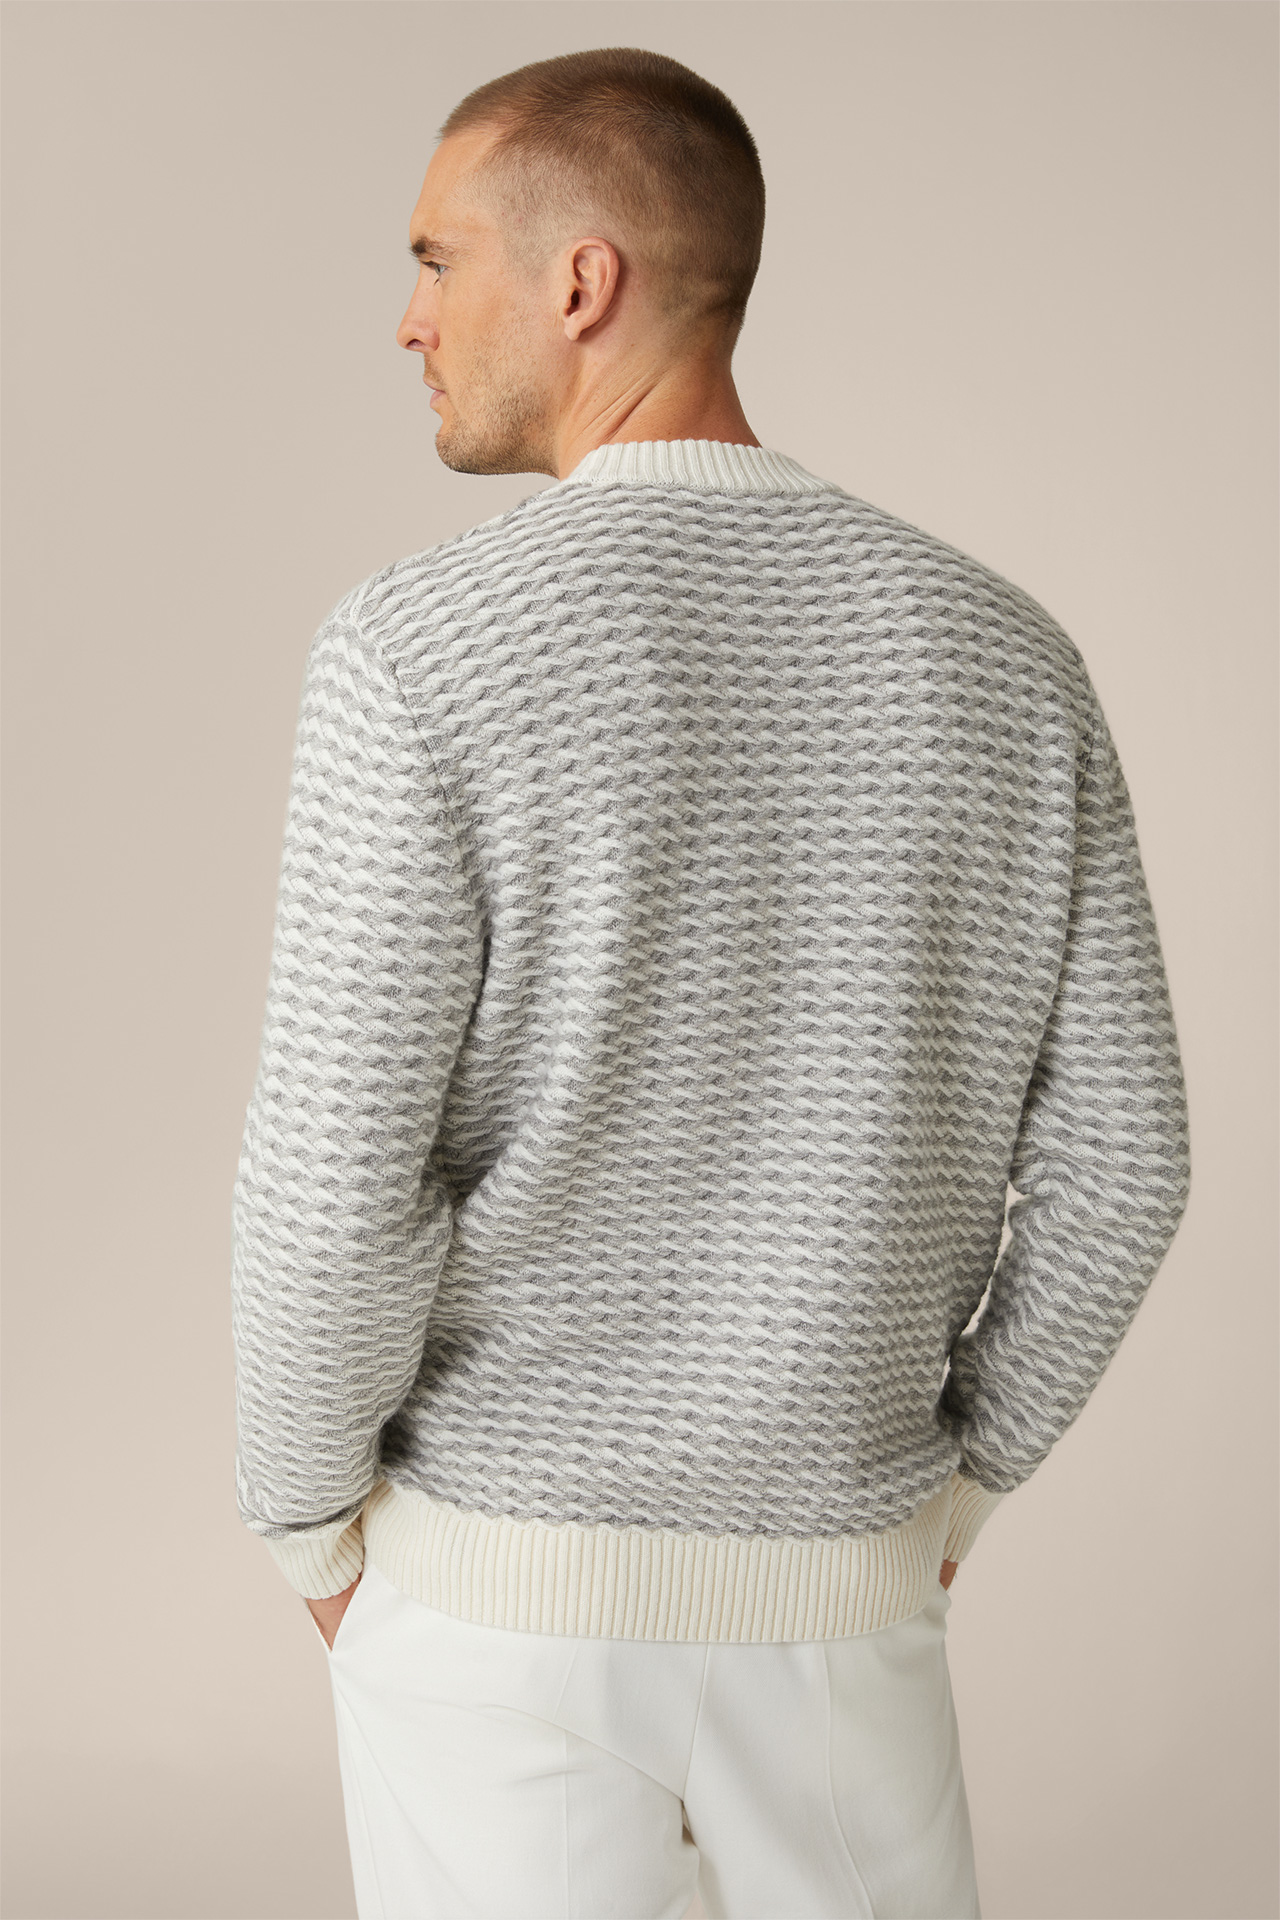 Schurwoll-Rundhals-Pullover Amilo mit Cashmere in Ecru-Grau strukturiert